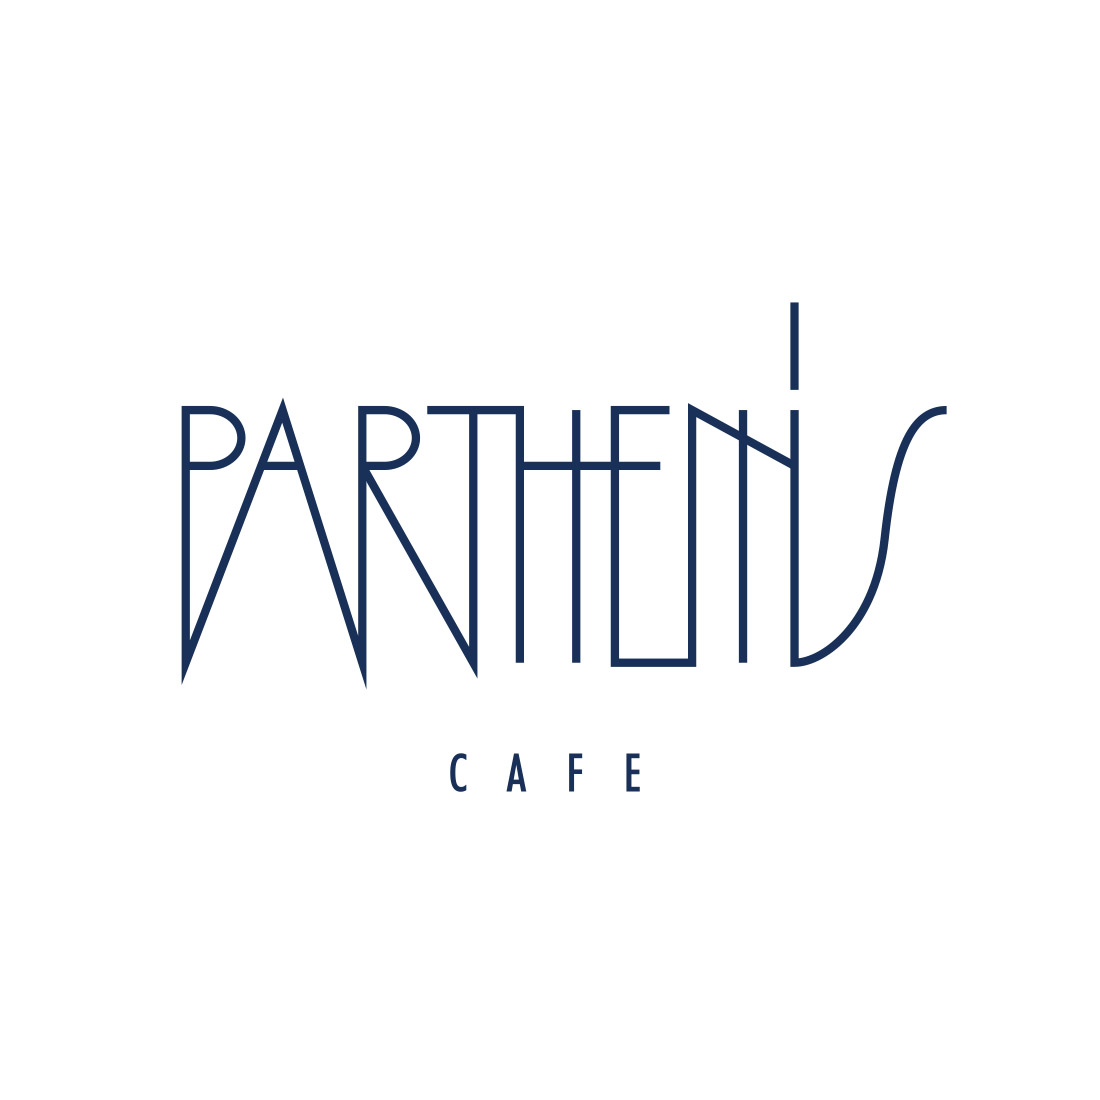 partheniscafe top4 - More - Parthenis Cafe